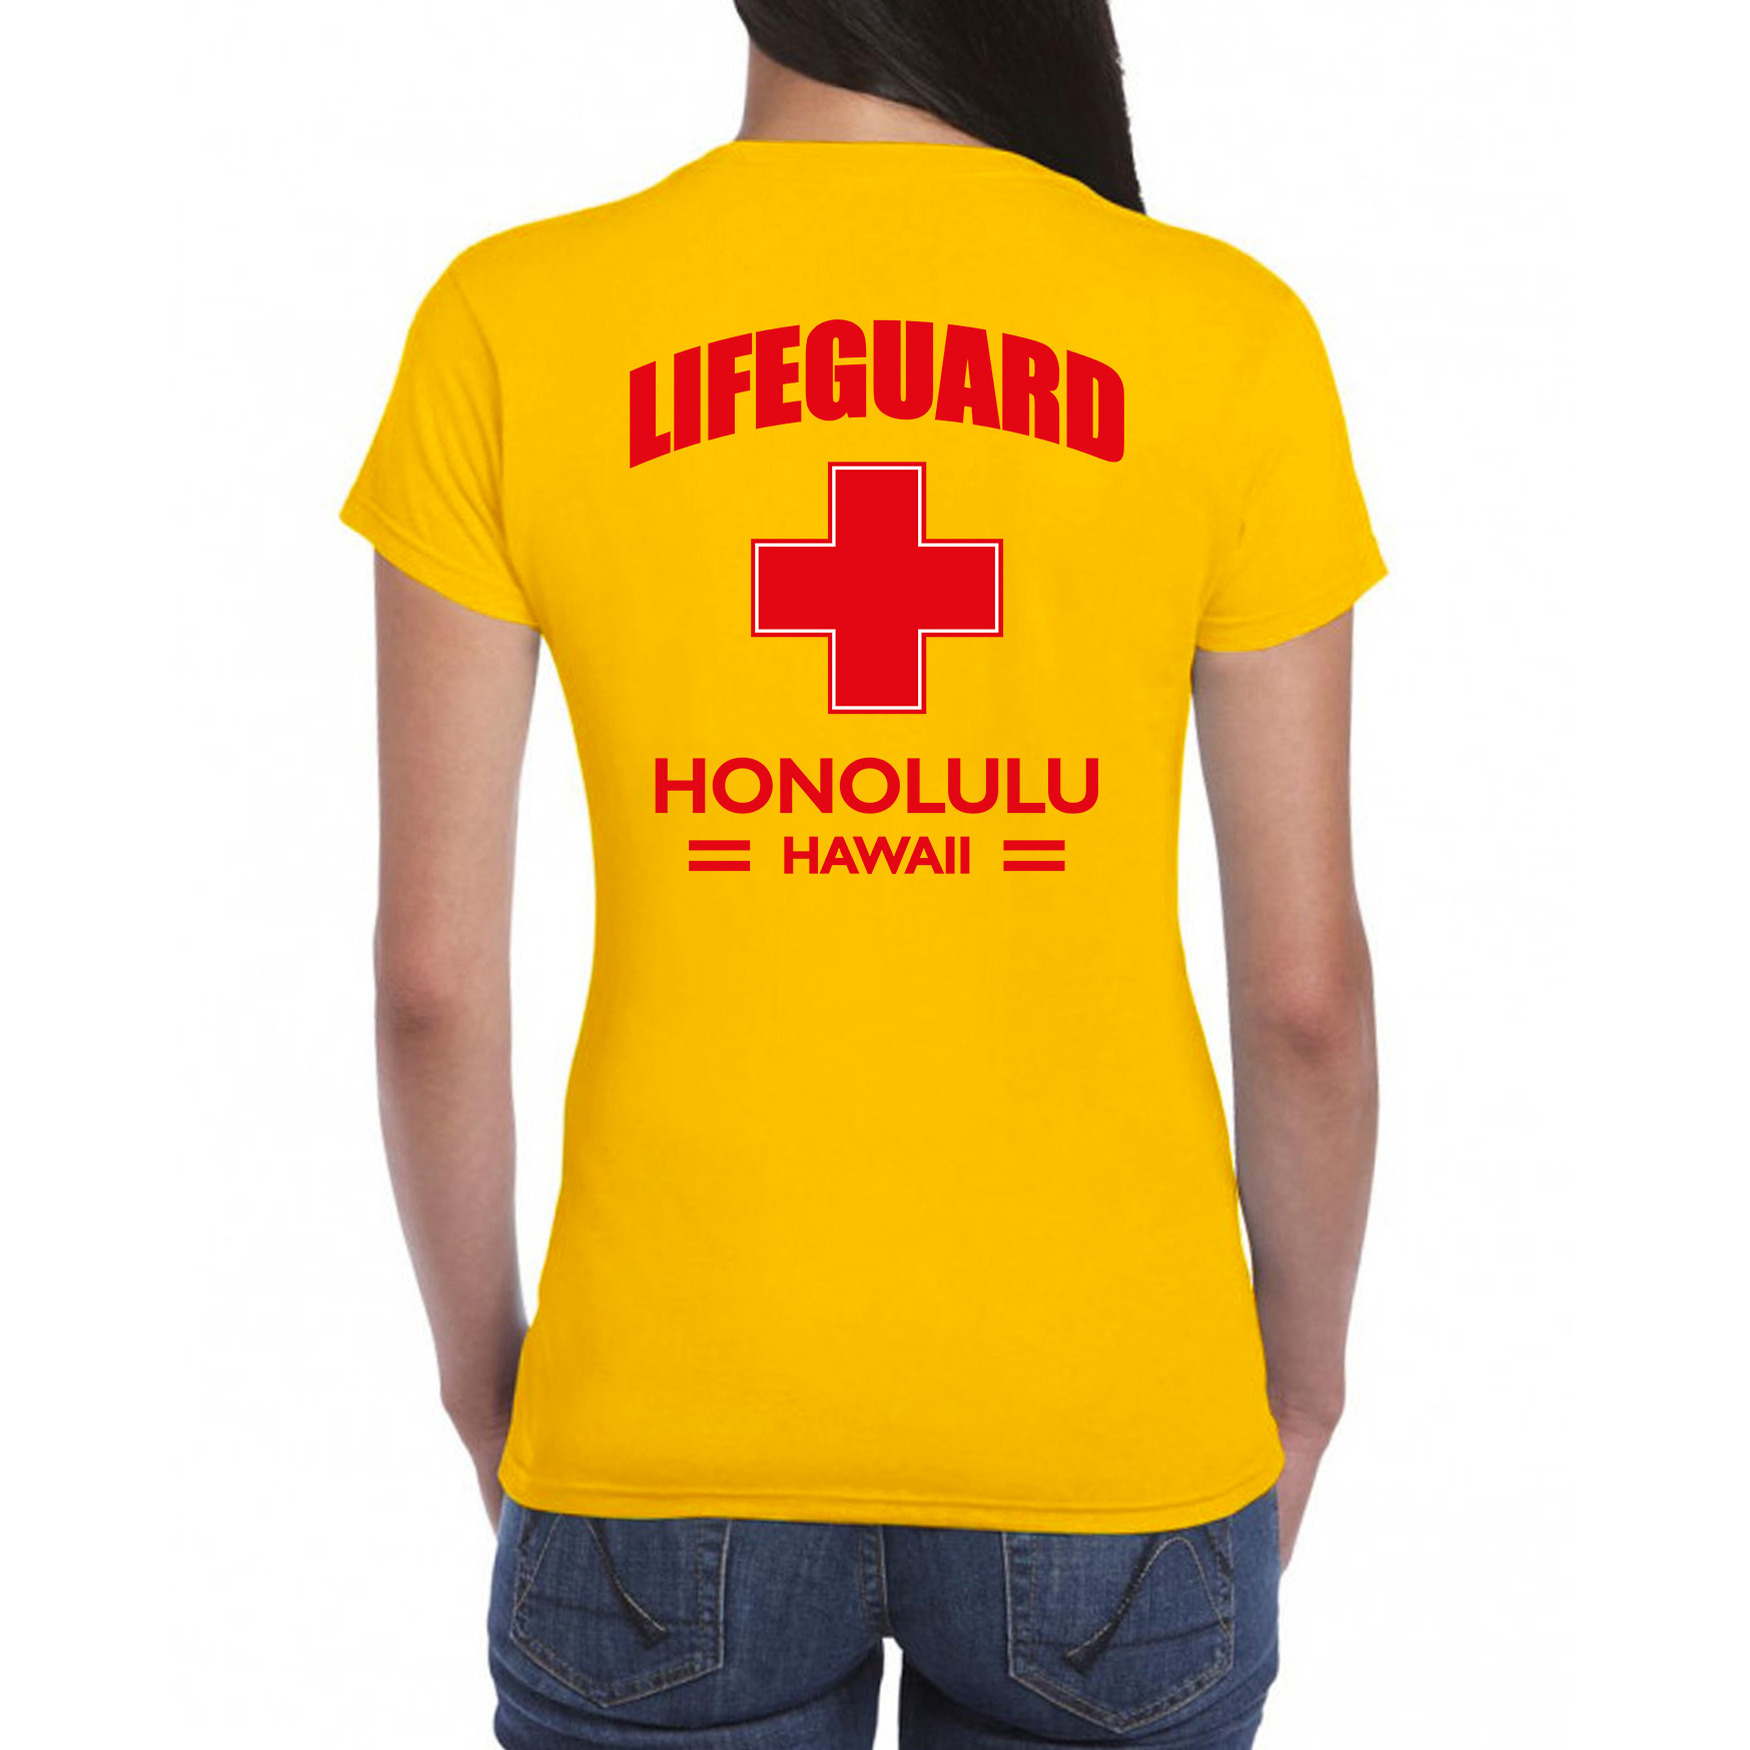 Lifeguard/ strandwacht verkleed t-shirt - shirt Lifeguard Honolulu Hawaii geel voor dames